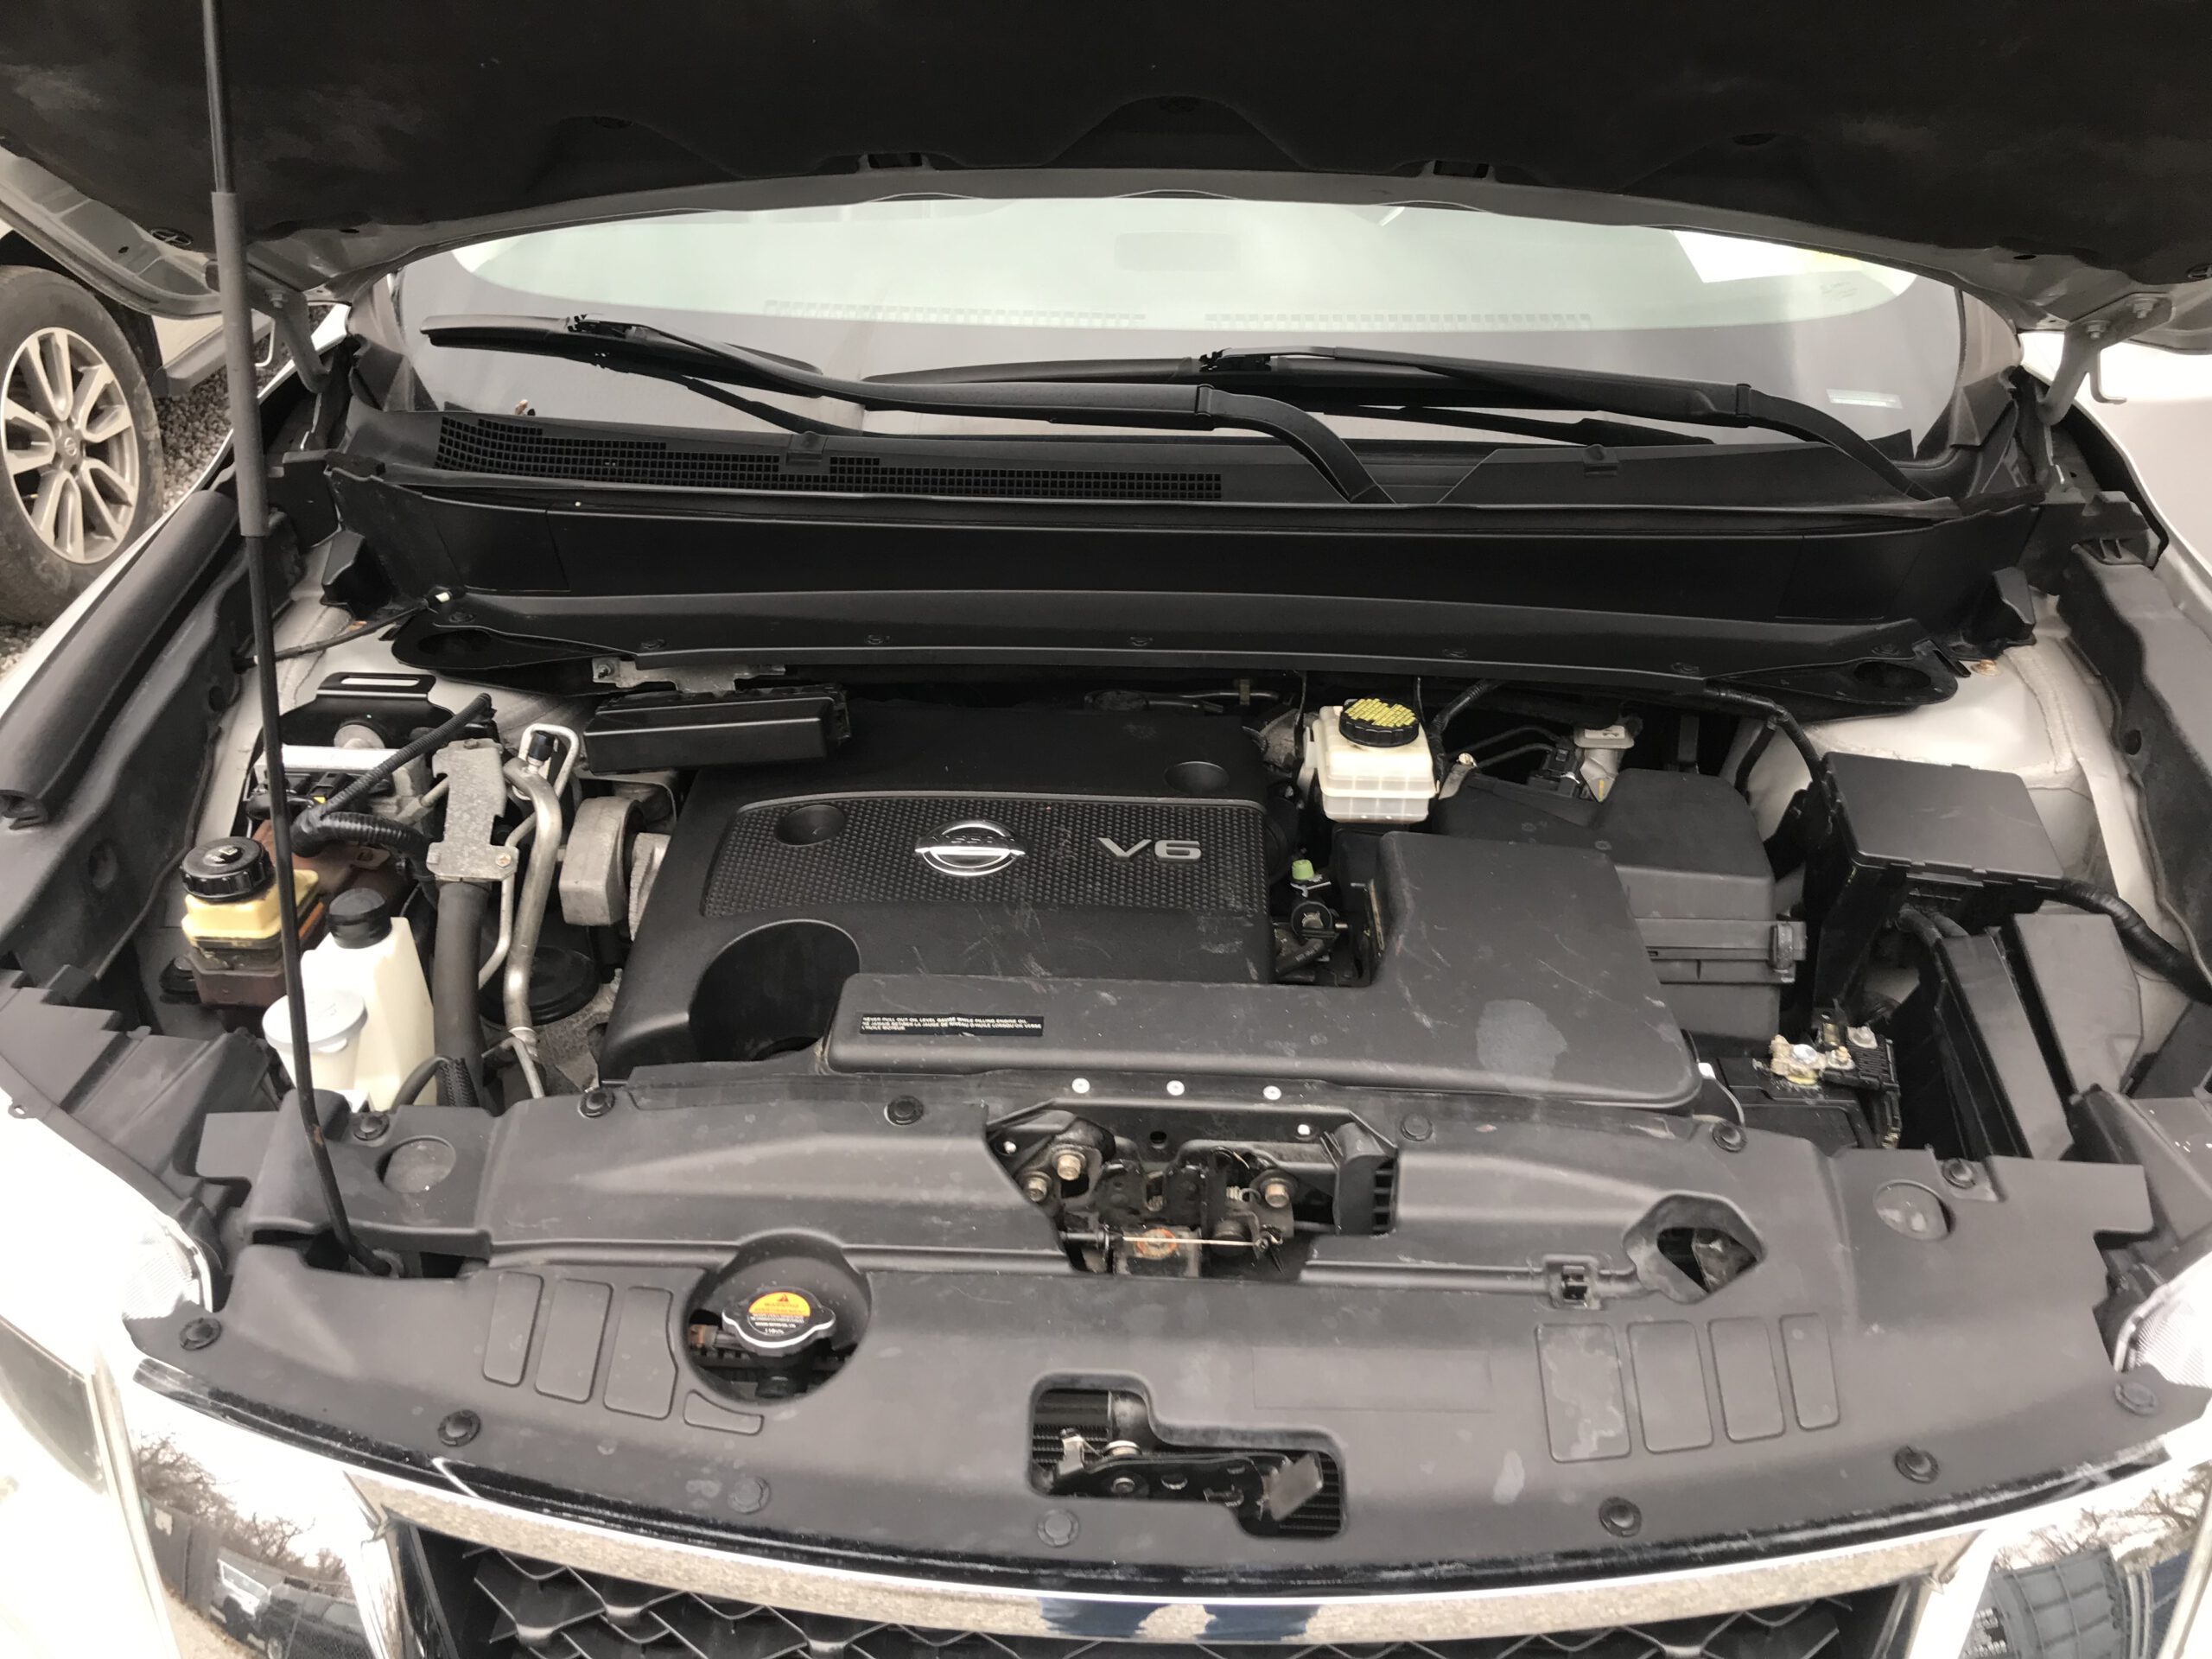 2015 Nissan Pathfinder 4WD 3rd row seating, runs and drives, no visible damage $6,999 full